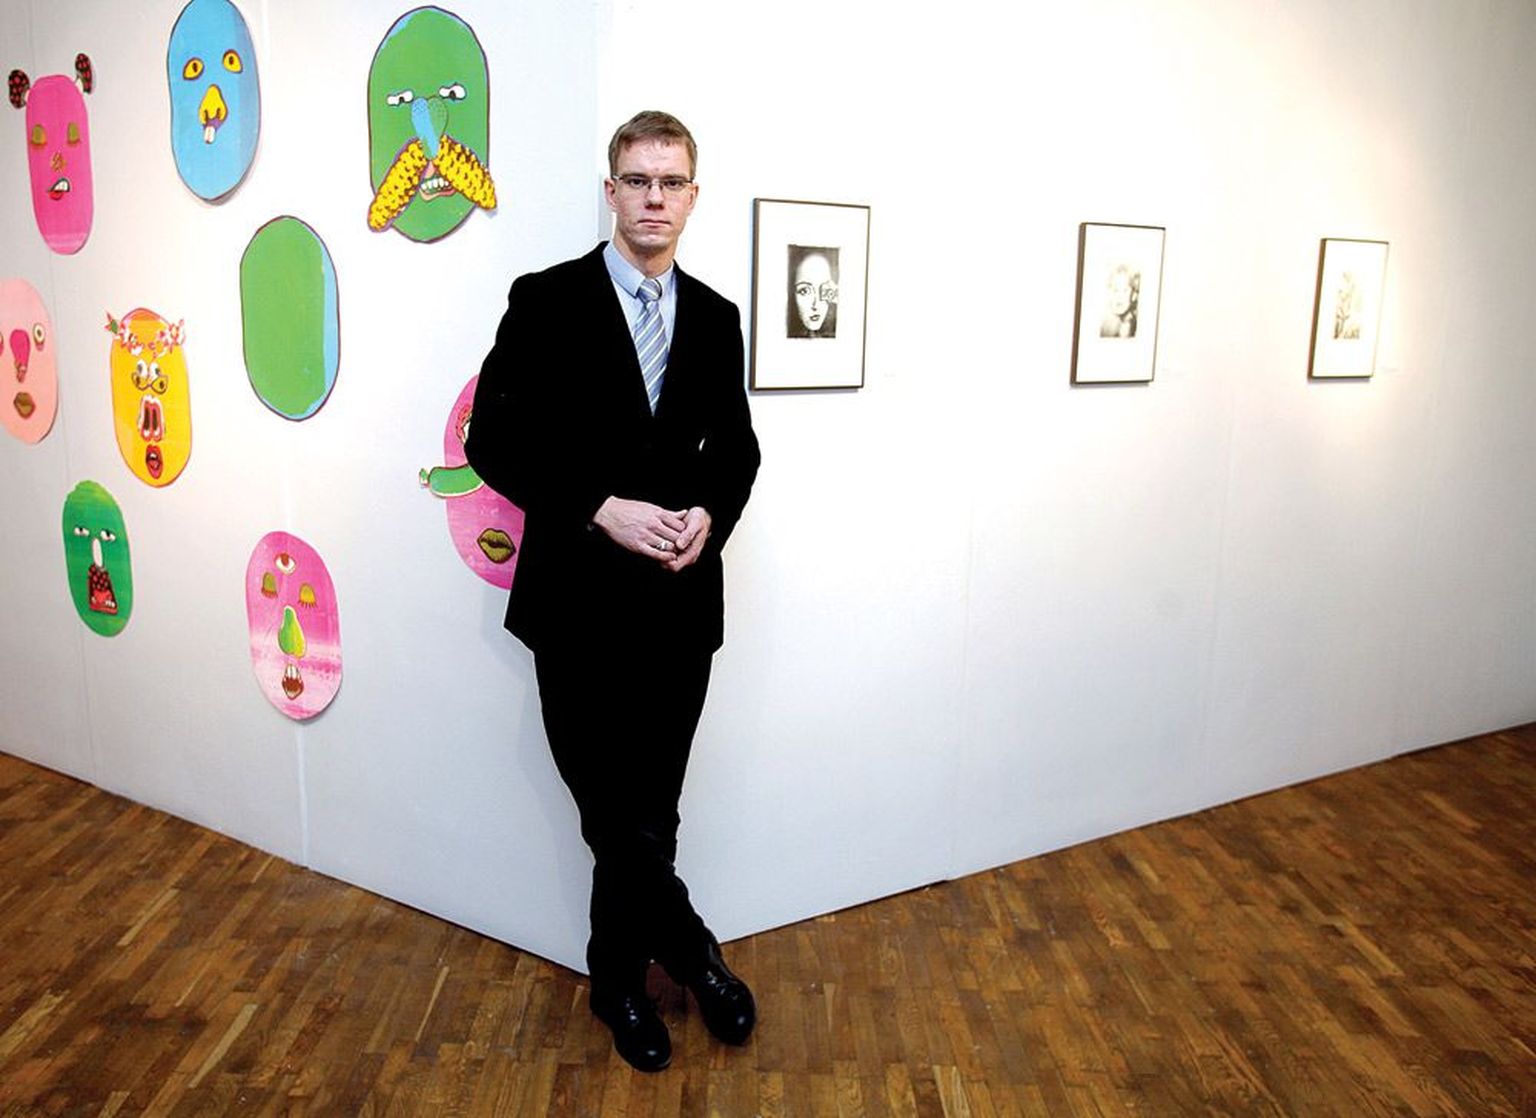 Indrek Grigor (30) toetub Tartu kunstimaja suures galeriis graafikafestivali kujundusse paigaldatud vaheseinale. Tema paremal käel on Kuti Kuti ja vasakul käel Riina Varoli looming. Ta vaatab, kuidas reageerib Marko Mäetamme seksivideole soliidses eas naiskülastaja.